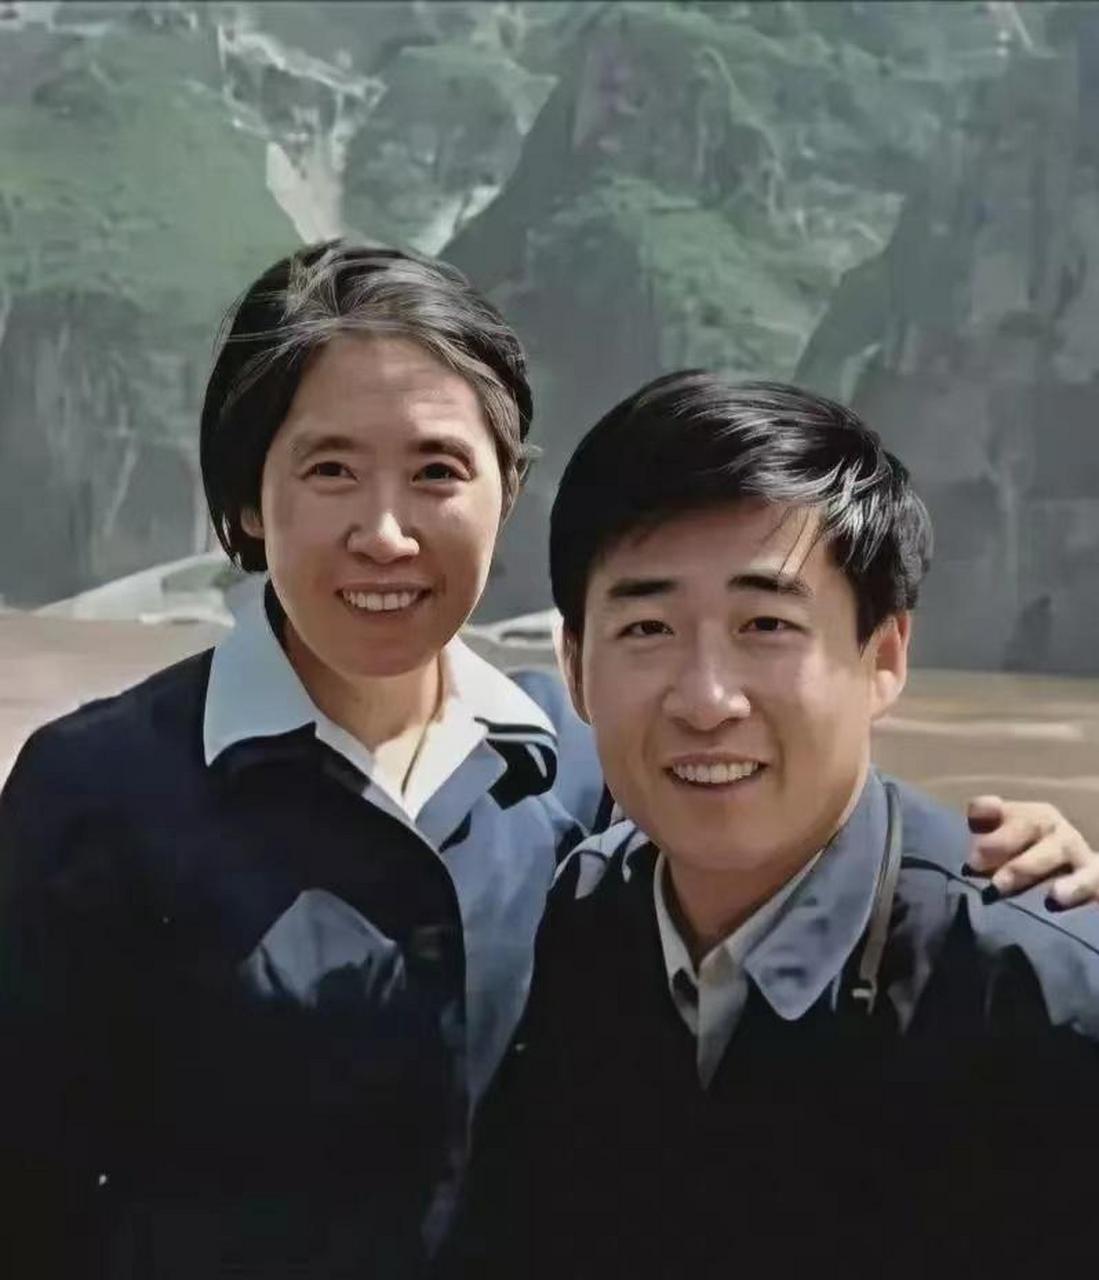 1979年,28岁的刘源与母亲在乘船游览三峡时的合影!